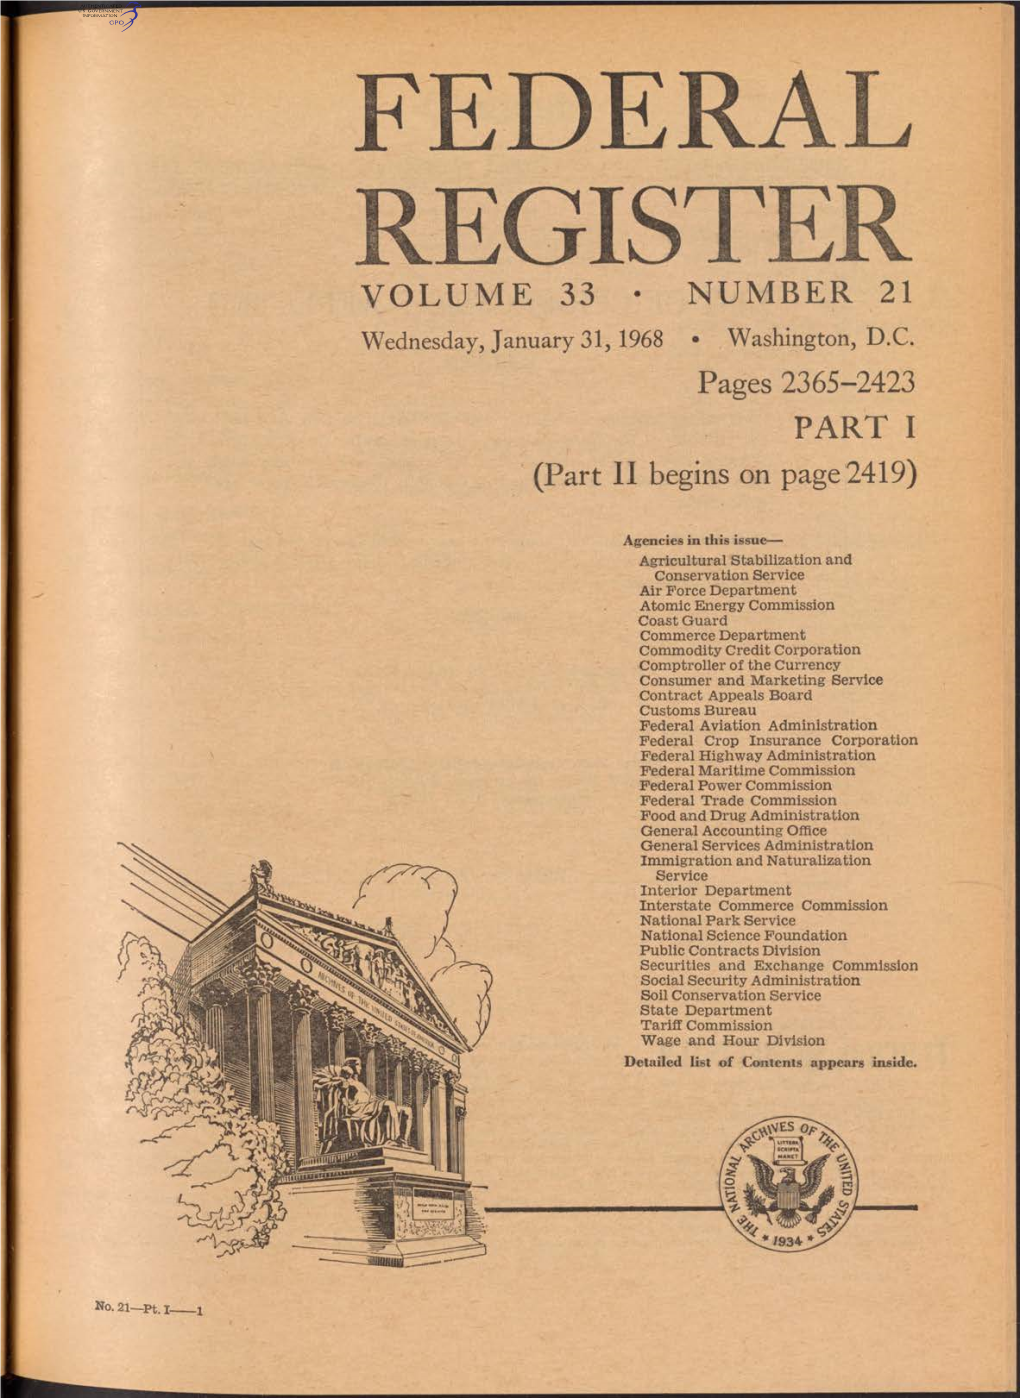 Federal Register Volume 33 • Number 21